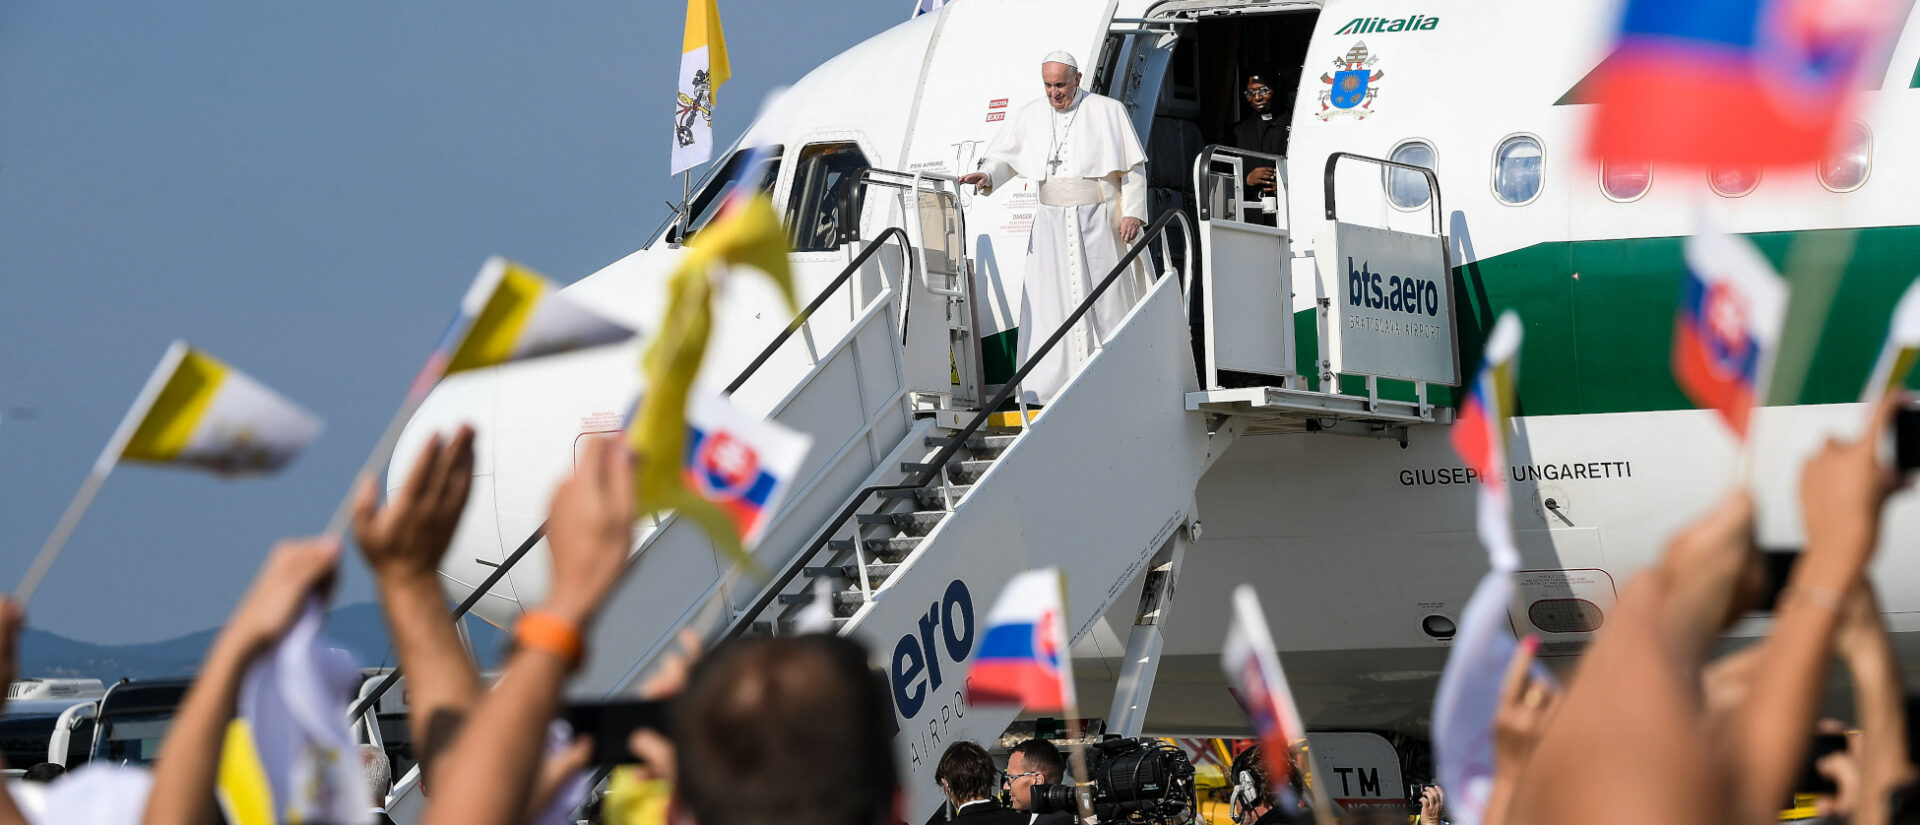 Menschen schwenken mit Fähnchen bei der Ankunft von Papst Franziskus in Bratislava (Slowakei) am 12. September 2021.